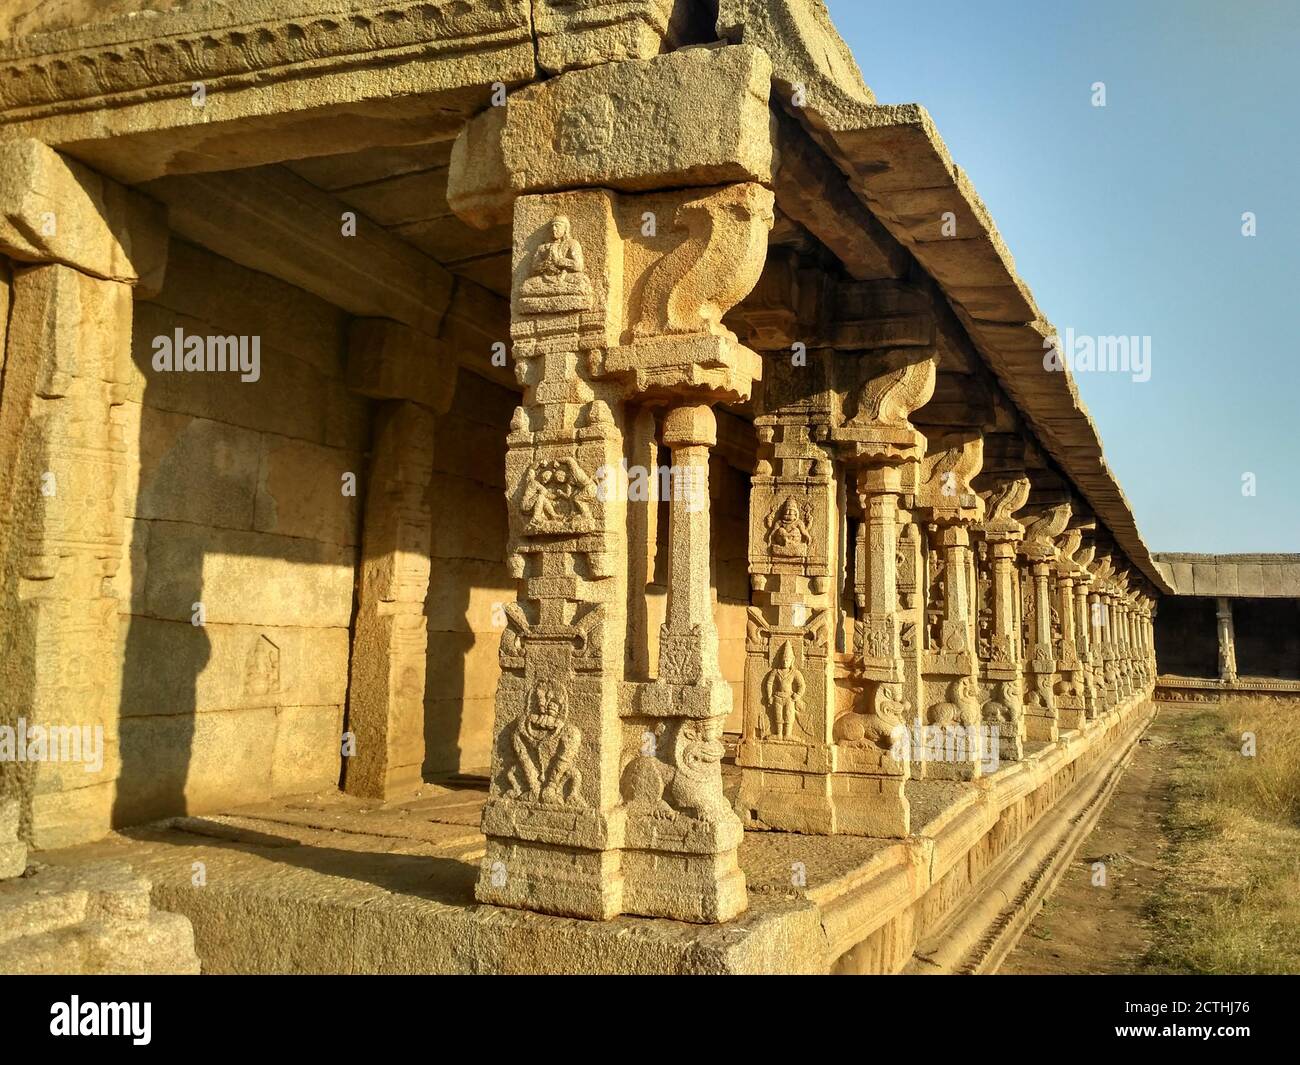 Columnas de las Ruinas del Templo de Achyuta Raya, Hampi, Karnataka, India. Sitio arqueológico antiguo y sagrado en Hampi, India Foto de stock